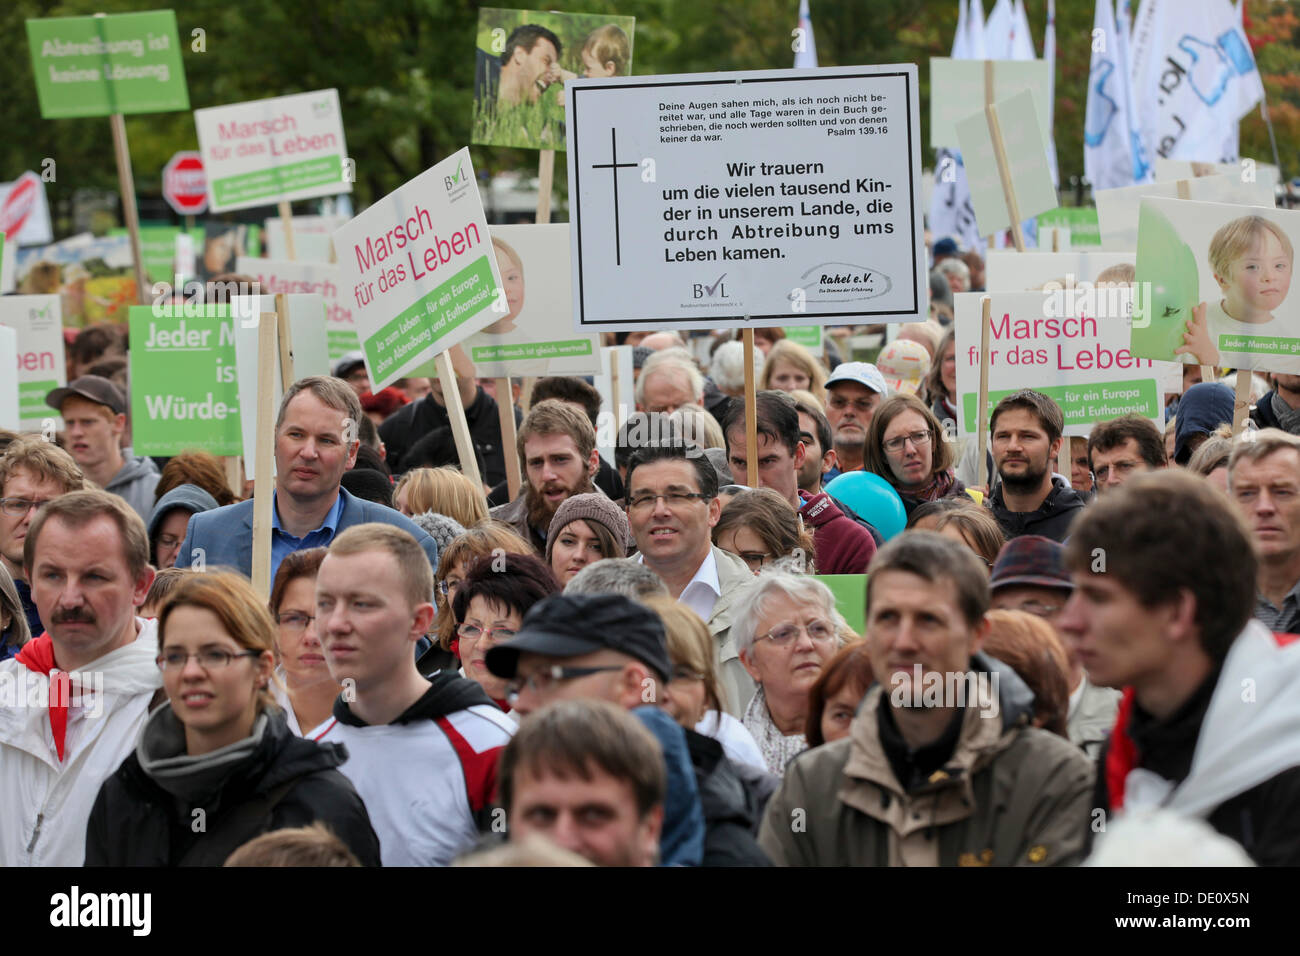 Anti-abortistas tomar parte en una protesta en contra del aborto, organizada por el Bundesverband Lebensrecht asociación federal Foto de stock